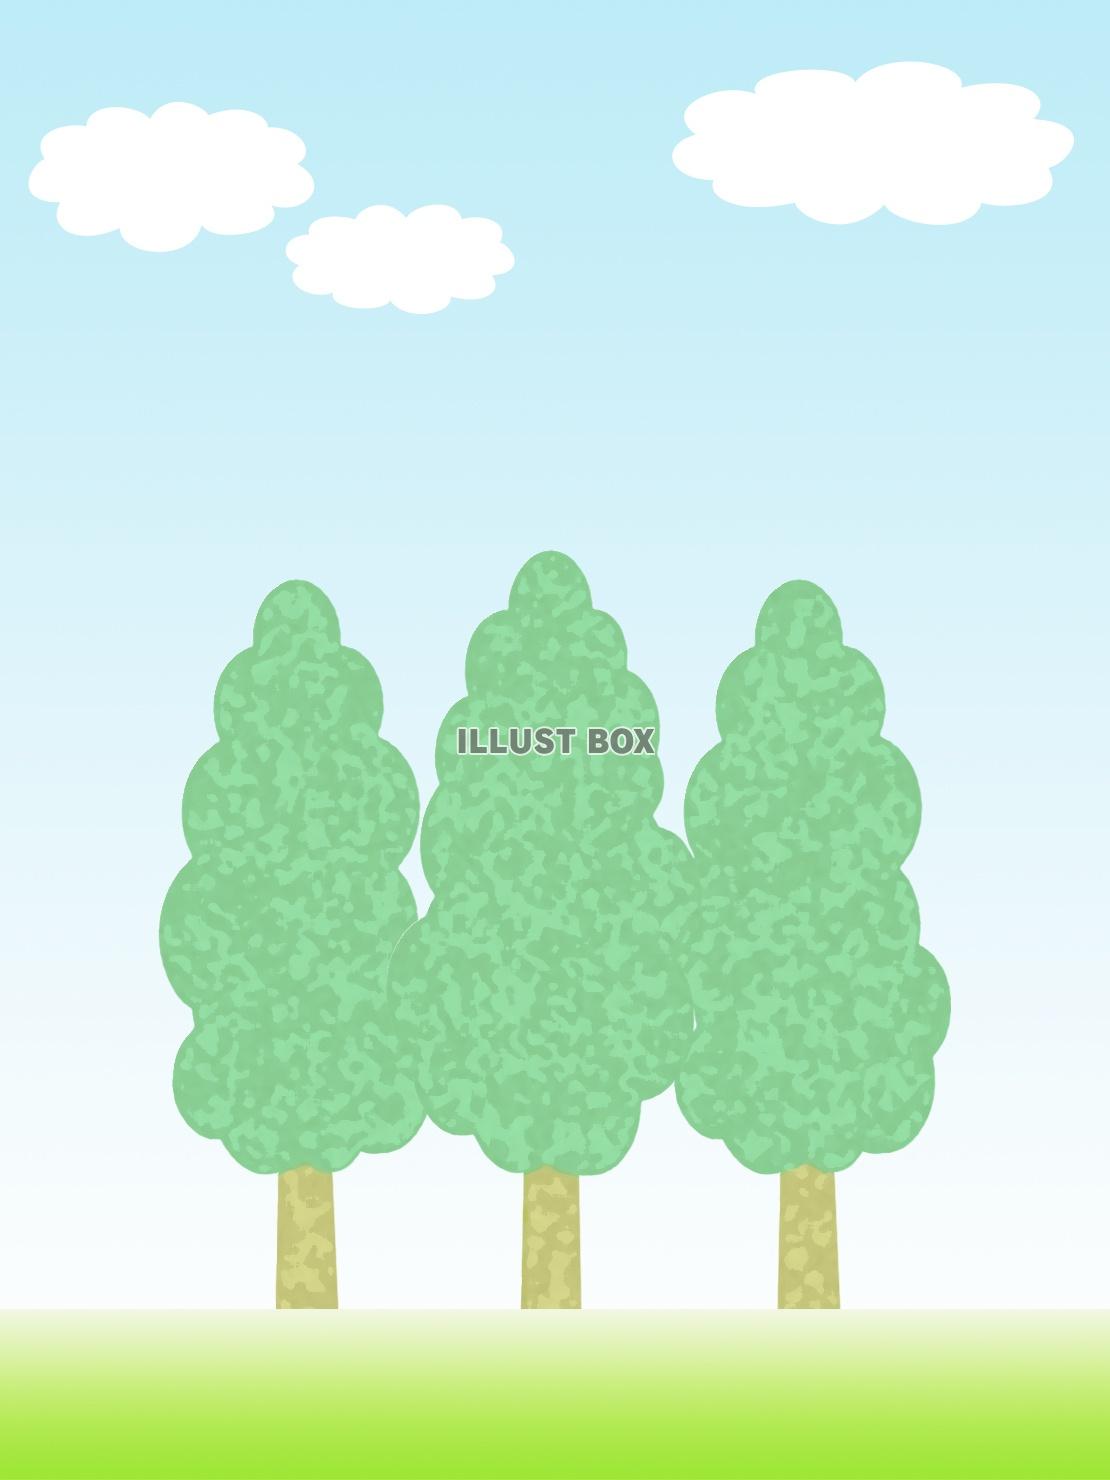 無料イラスト 風景壁紙シンプルな樹木の背景素材イラスト